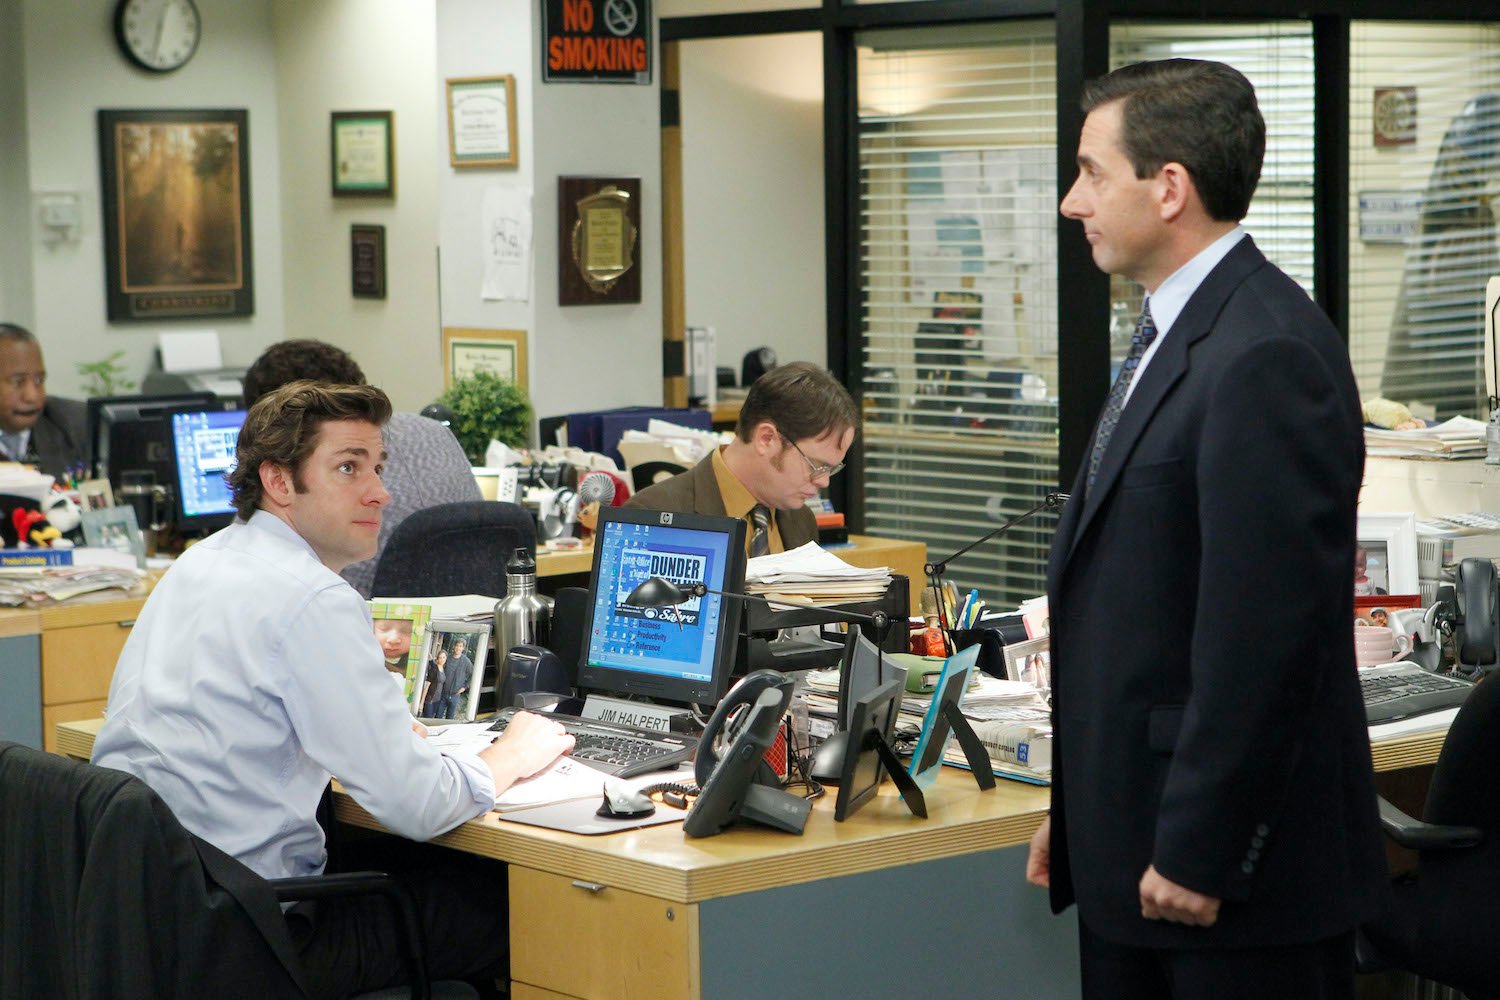 The Office stars John Krasinski as Jim Halpert, Rainn Wilson as Dwight Schrute, and Steve Carell as Michael Scott